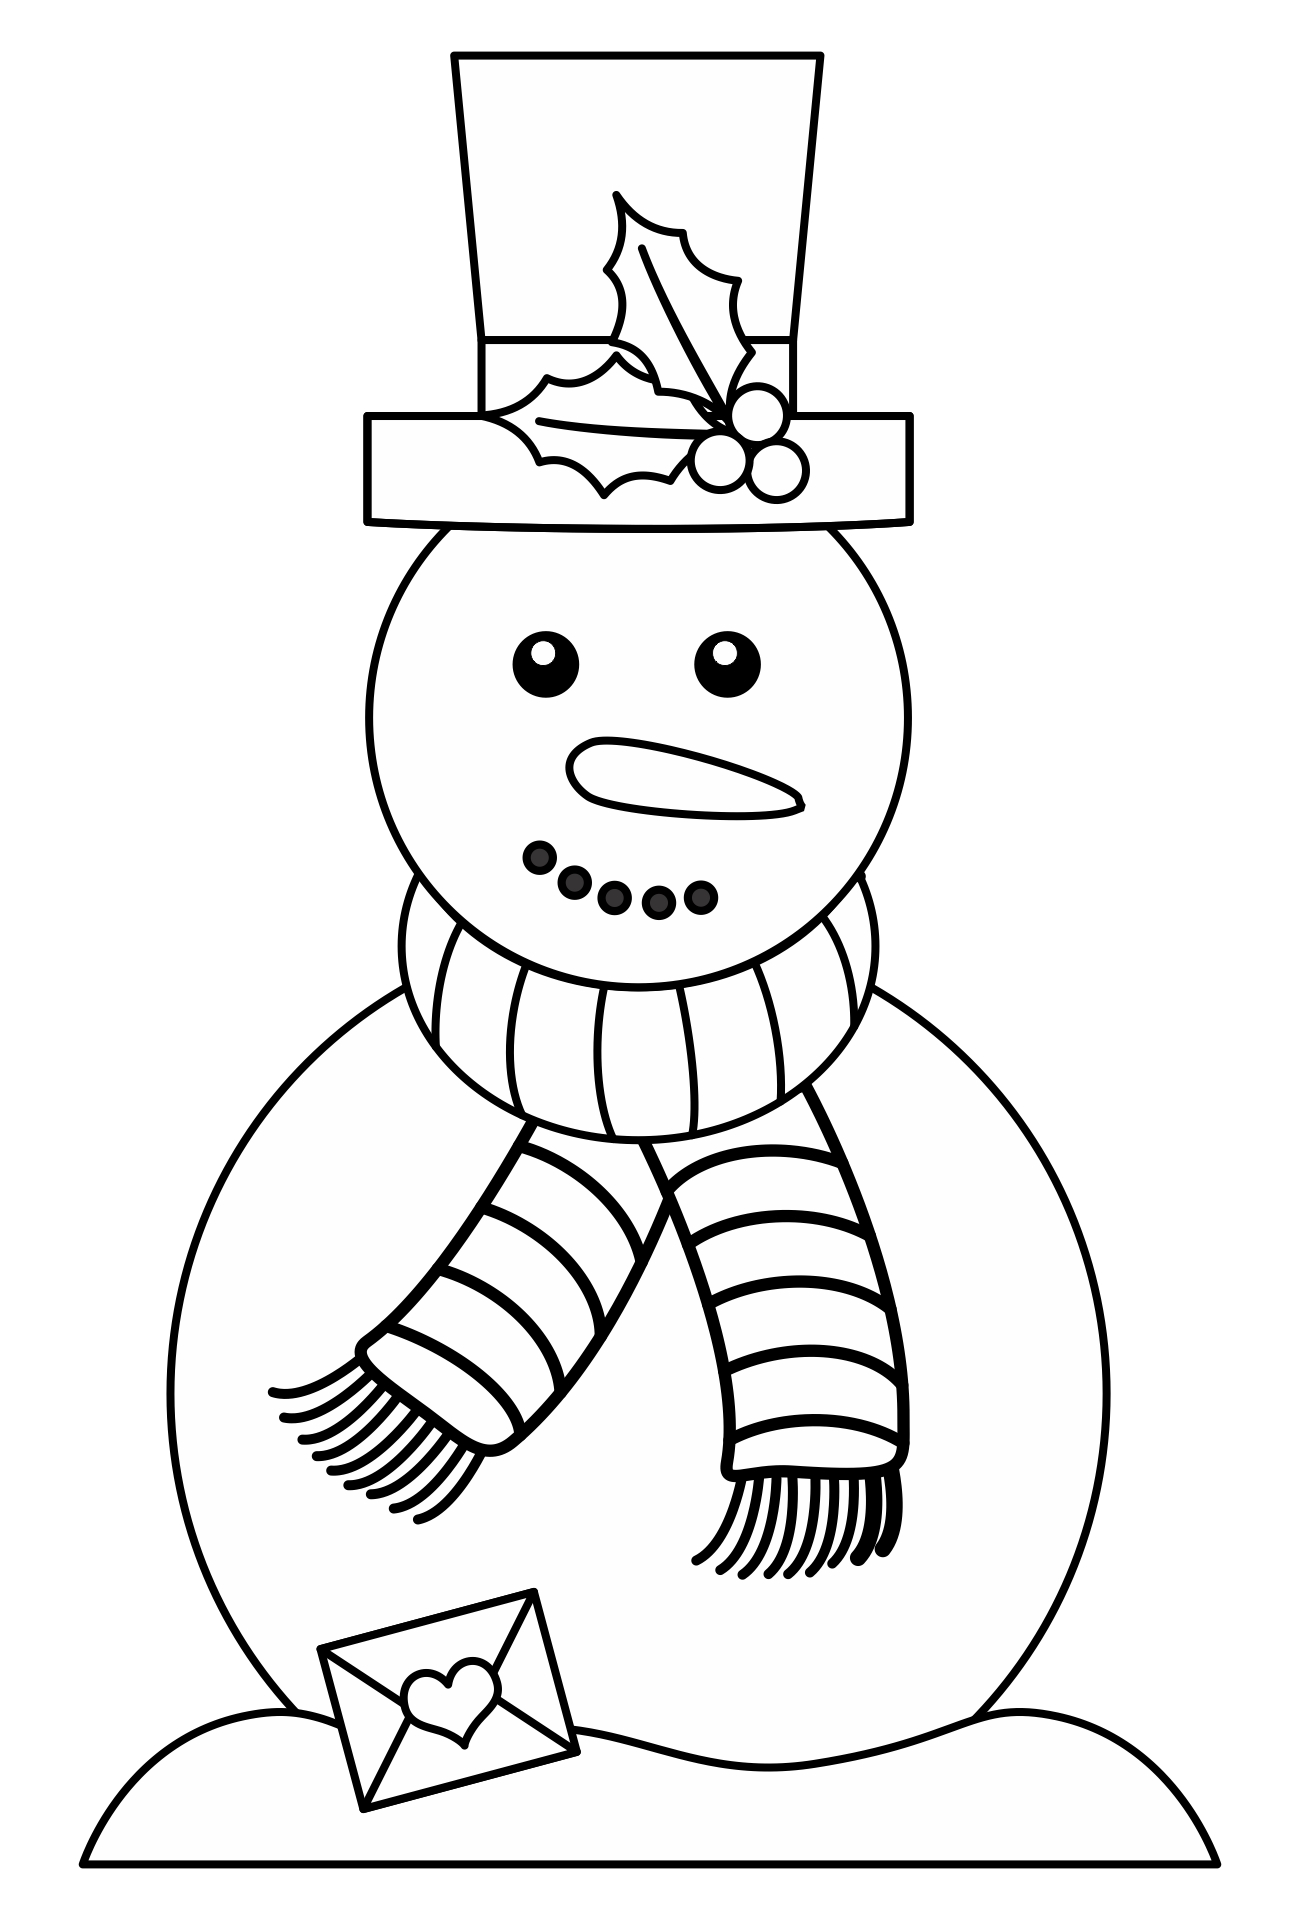 Printable Snowman Patterns